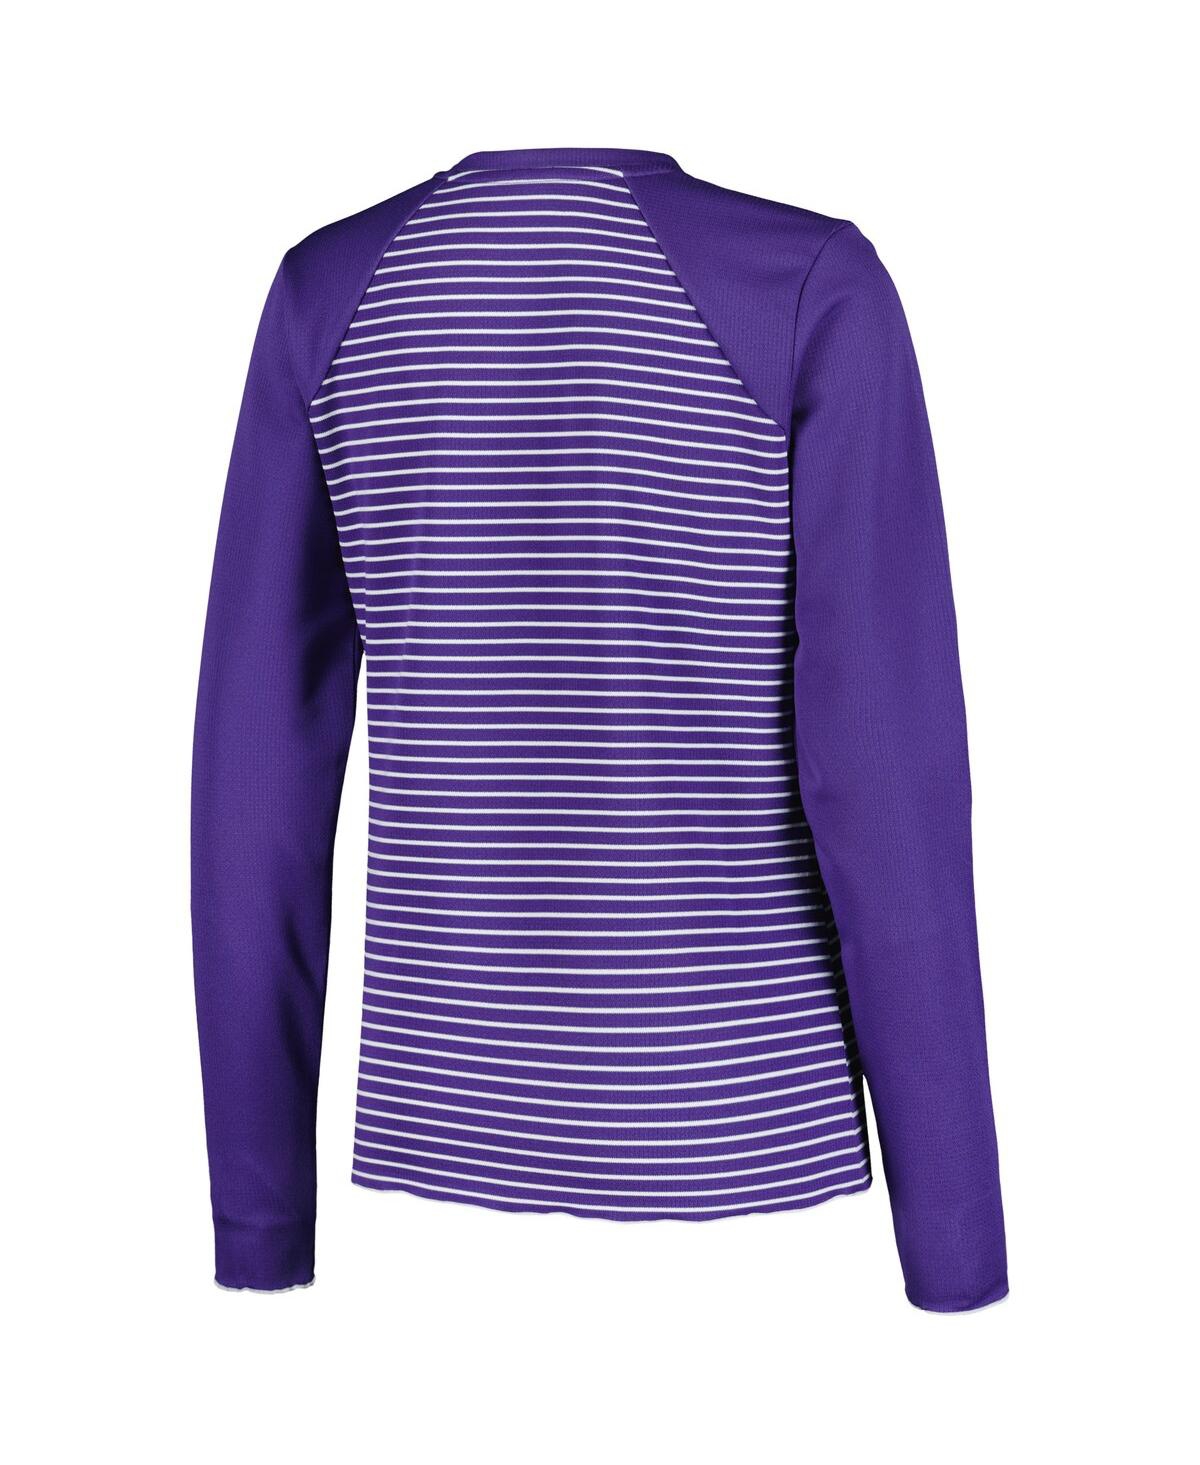 Shop Antigua Women's  Purple Minnesota Vikings Maverick Waffle Henley Long Sleeve T-shirt